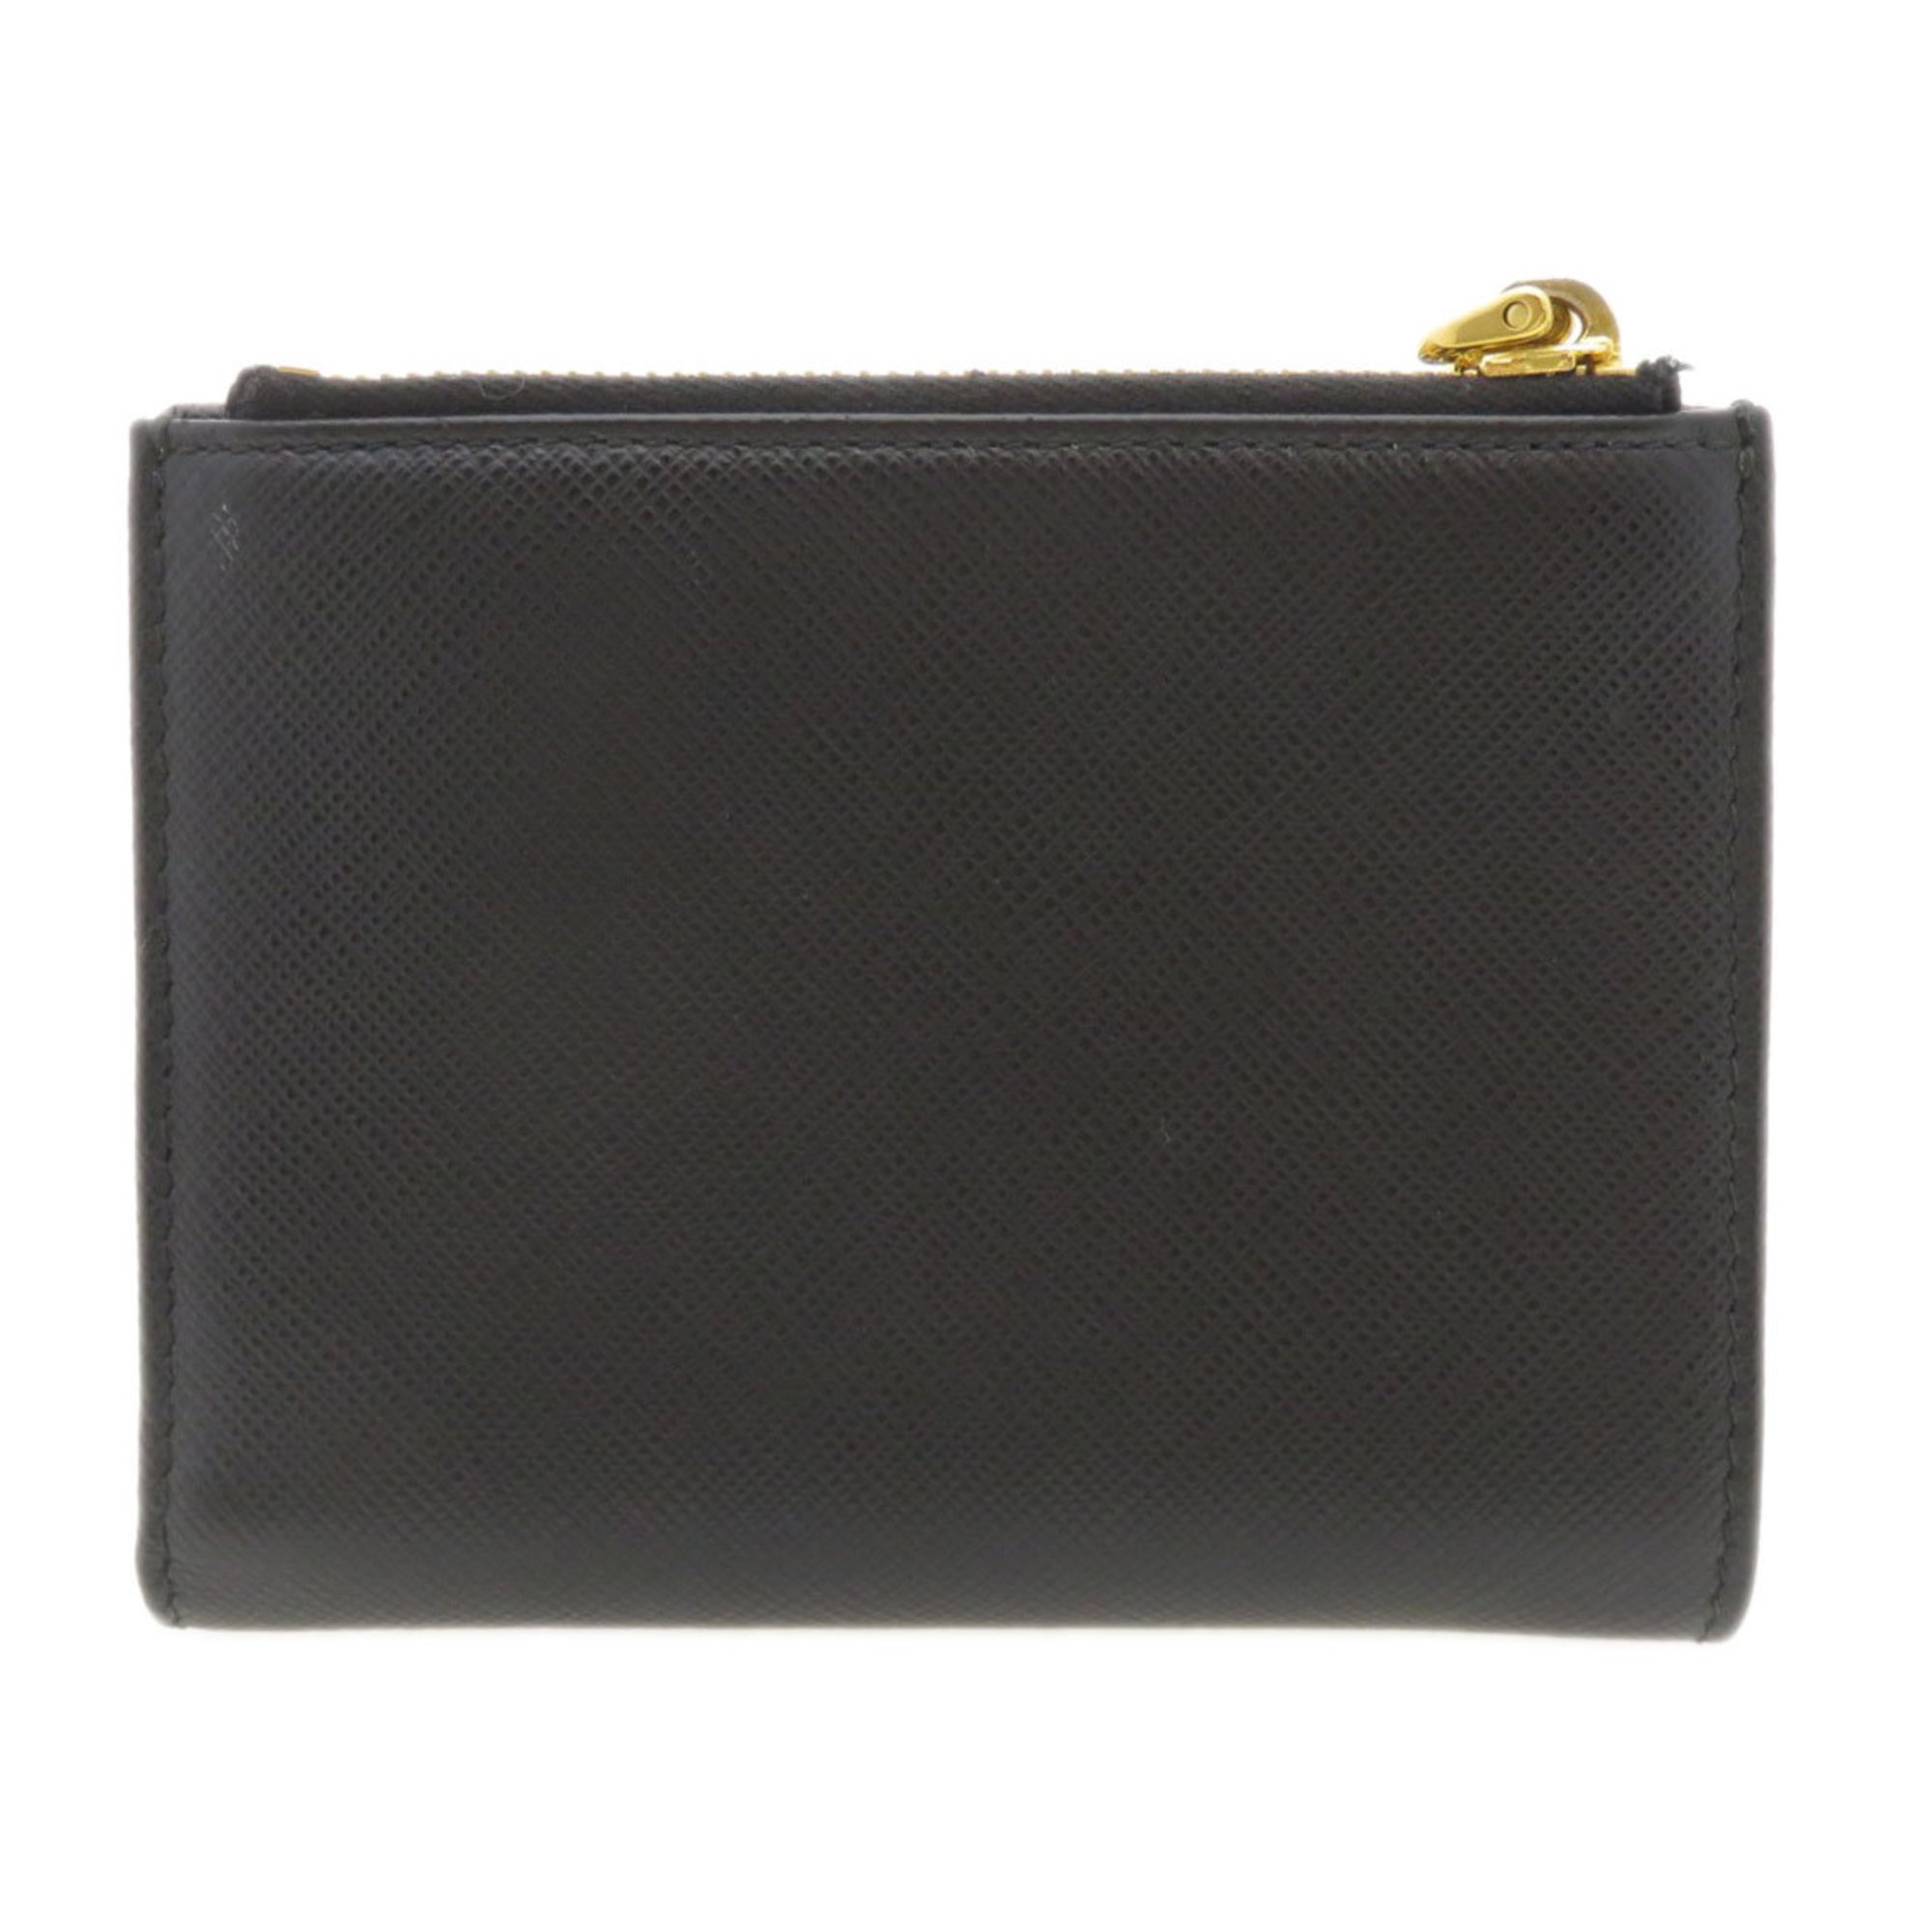 Prada motif bi-fold wallet leather ladies